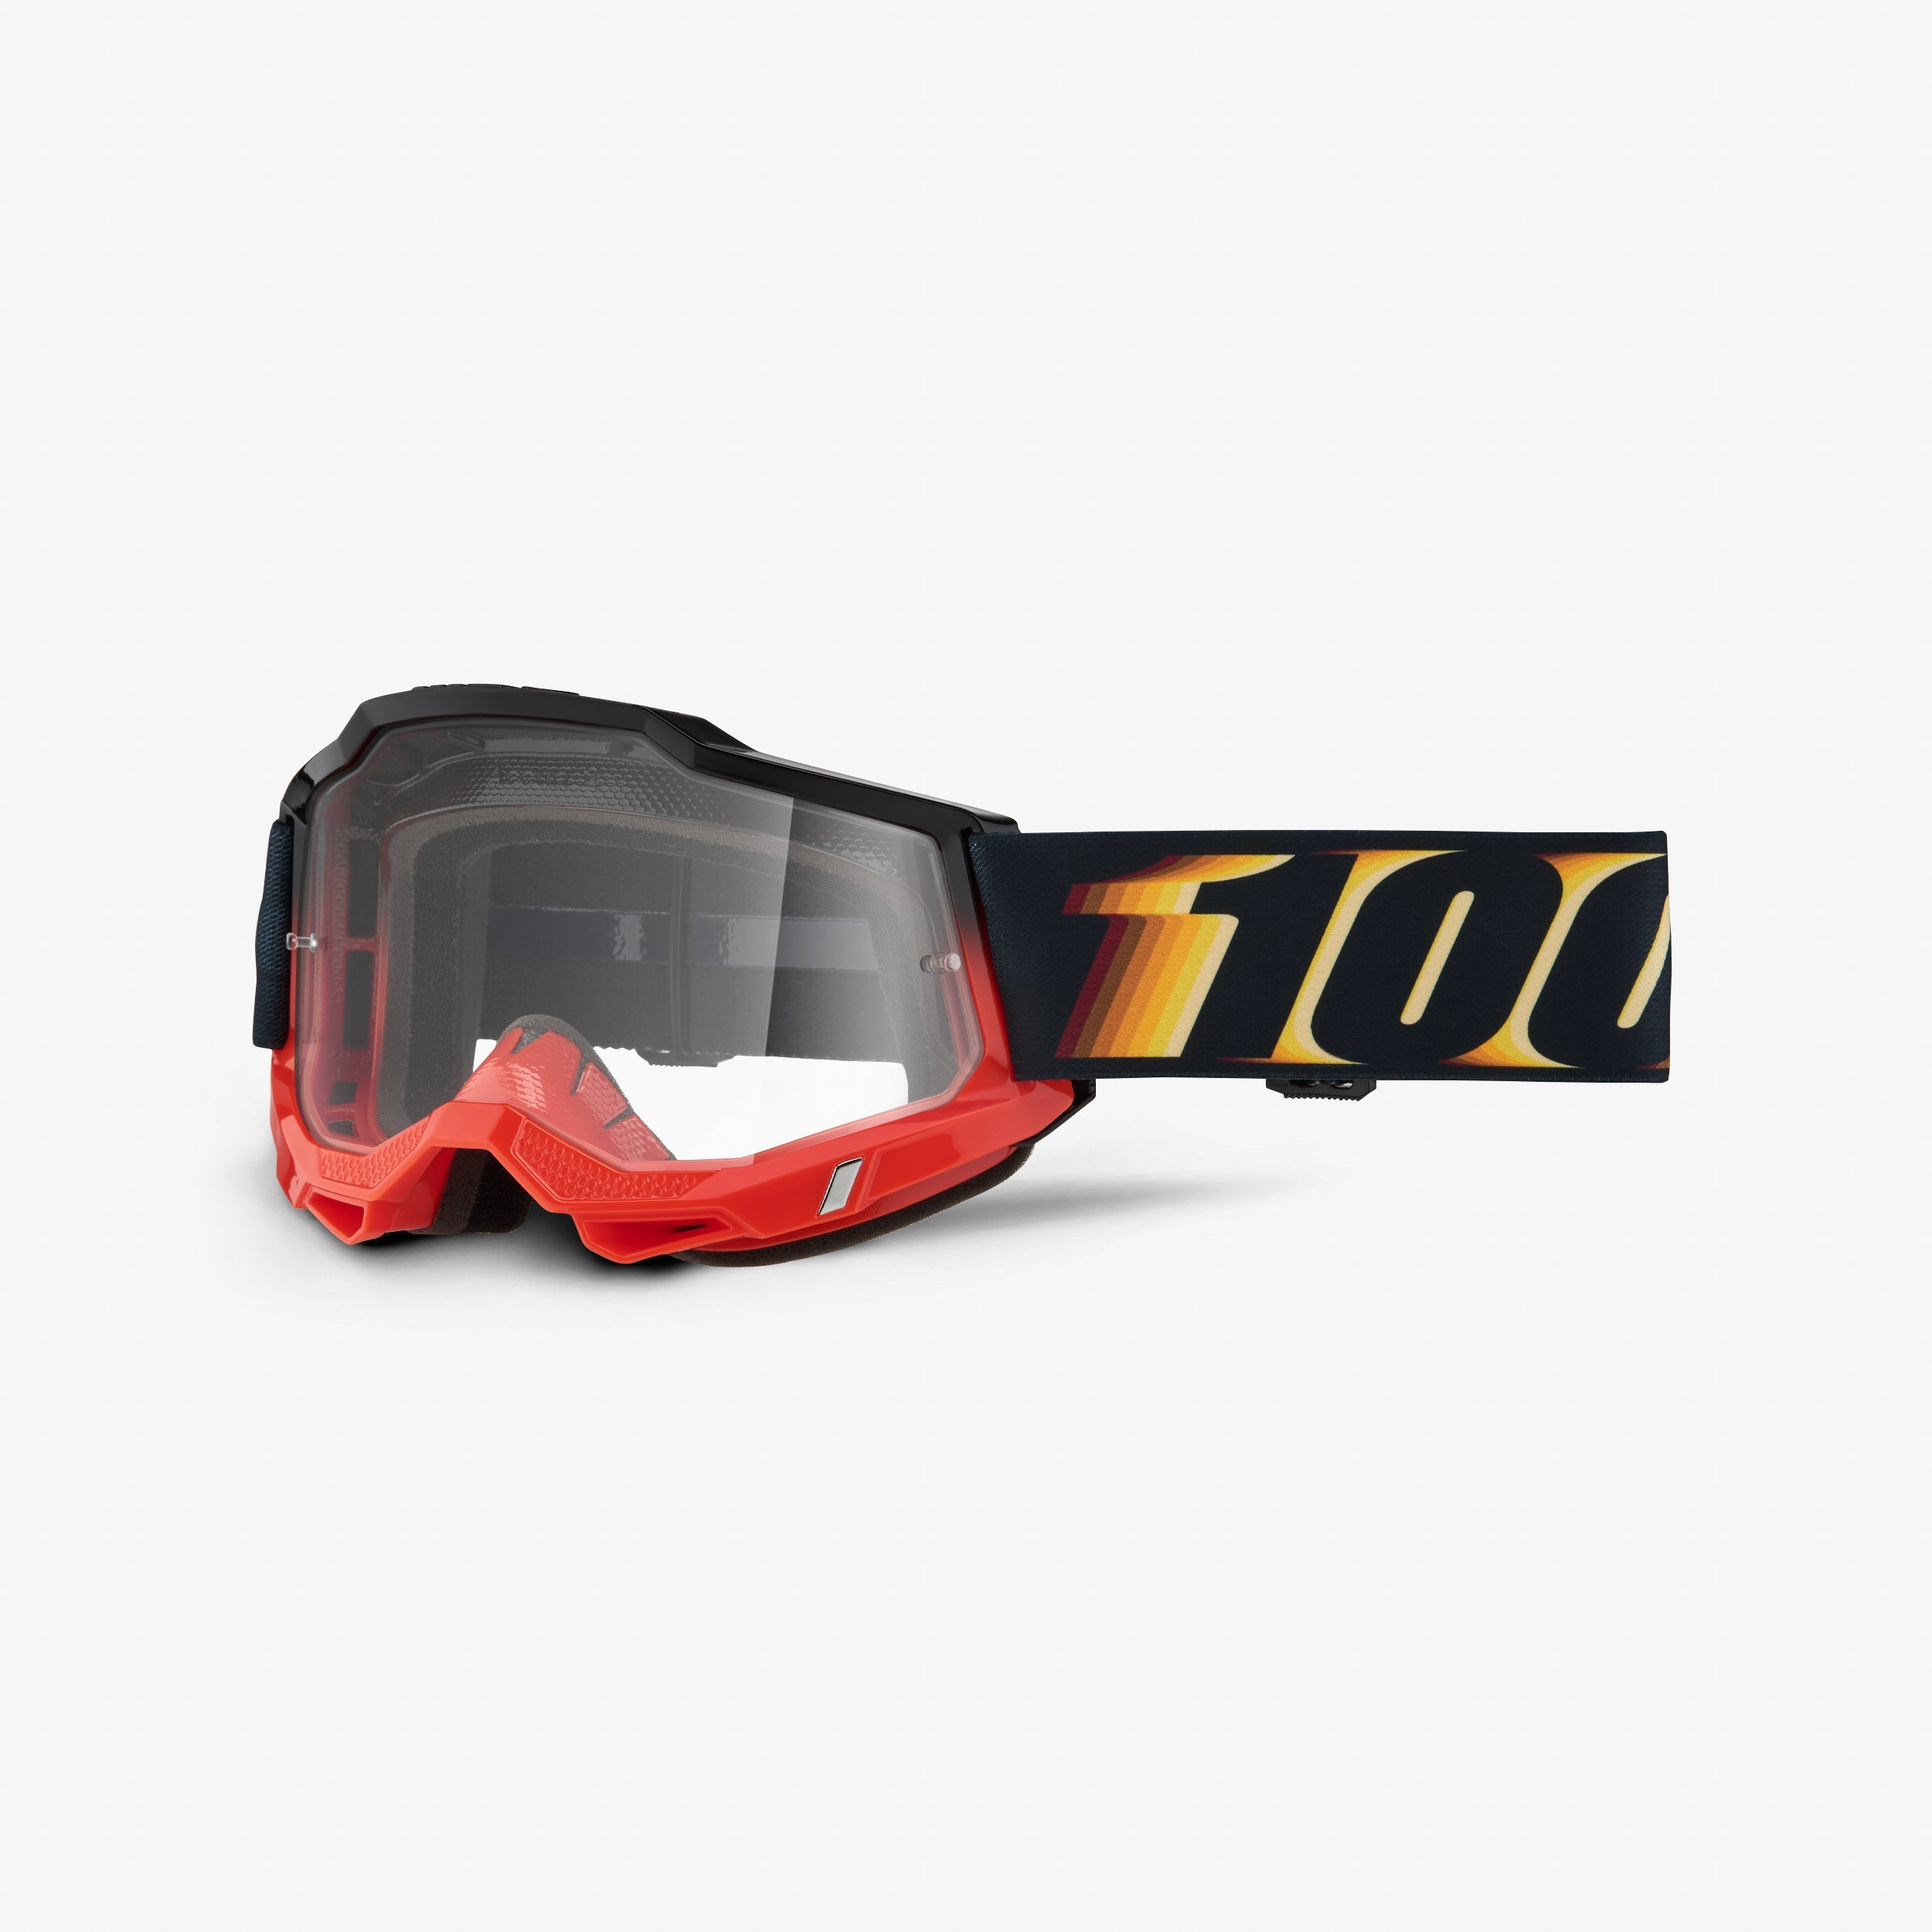 Accuri2 Moto Goggles - Dirt Bike & Motocross Goggles | Ride 100%